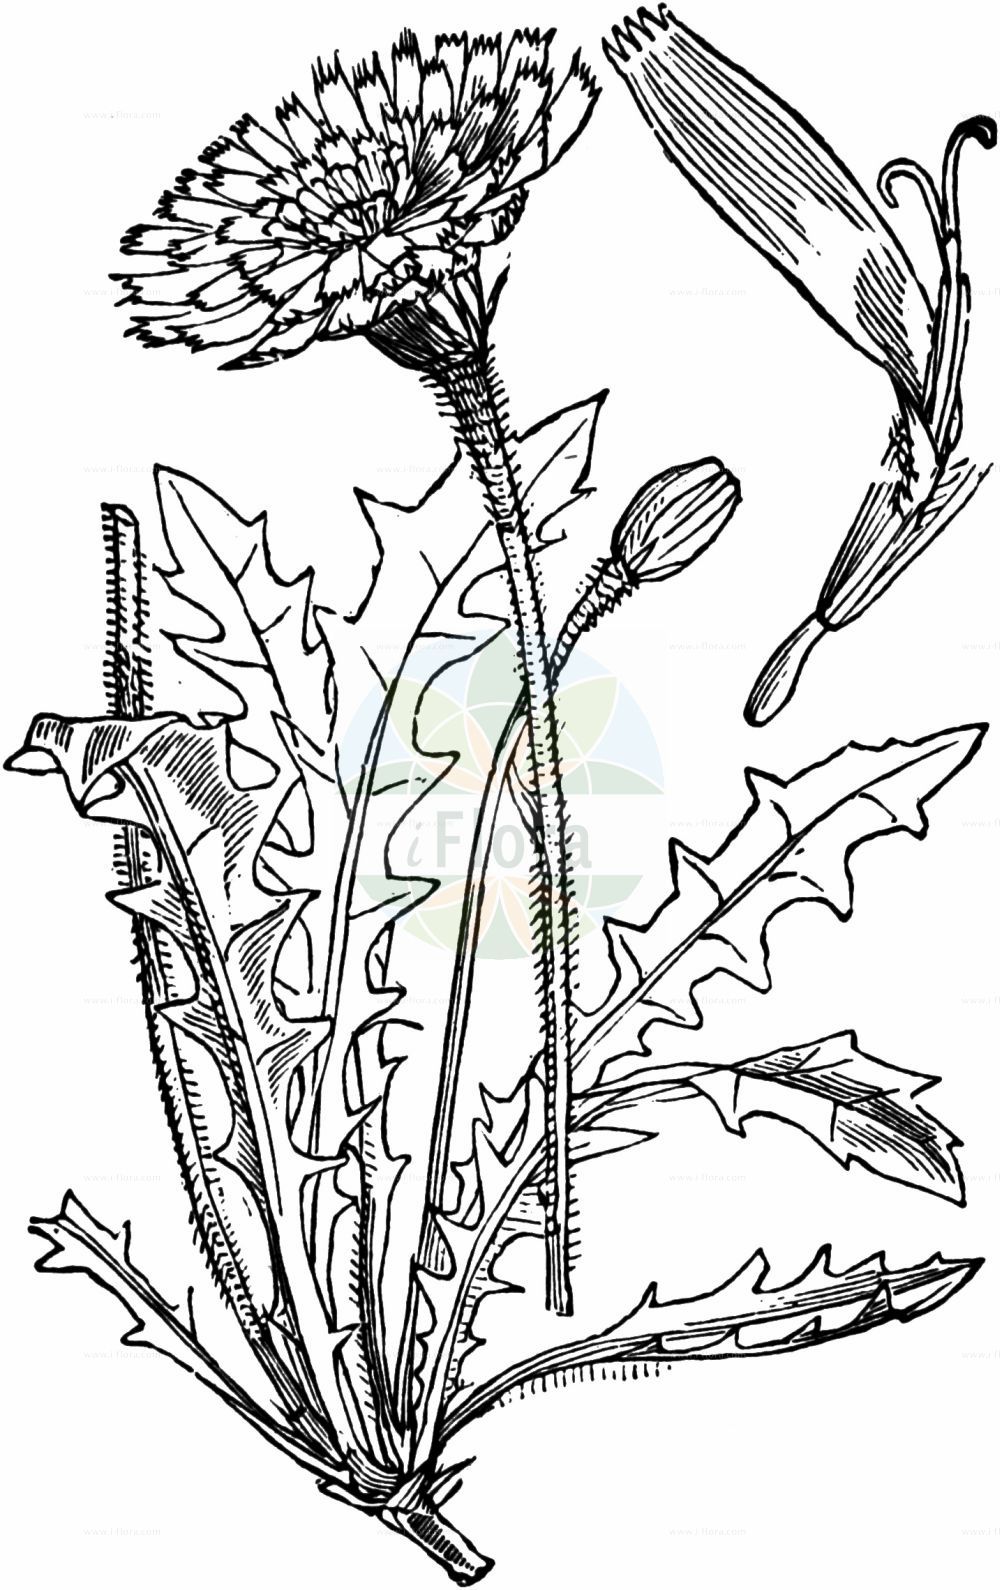 Historische Abbildung von Leontodon hispidus (Rauher Löwenzahn - Rough Hawkbit). Das Bild zeigt Blatt, Bluete, Frucht und Same. ---- Historical Drawing of Leontodon hispidus (Rauher Löwenzahn - Rough Hawkbit). The image is showing leaf, flower, fruit and seed.(Leontodon hispidus,Rauher Löwenzahn,Rough Hawkbit,Leontodon crispatus,Leontodon hispidus,Leontodon pavonii,Leontodon proteiformis,Leontodon proteiformis var. crispatus,Rauher Loewenzahn,Gewoehnlicher Rauher Loewenzahn,Steifhaariger Loewenzahn,Zweifelhafter Steifhaariger Loewenzahn,Rough Hawkbit,Common Hawkbit,Bristly Hawkbit,Greater Hawkbit,Leontodon,Löwenzahn,Hawkbit,Asteraceae,Korbblütengewächse,Daisy family,Blatt,Bluete,Frucht,Same,leaf,flower,fruit,seed,Fitch et al. (1880))